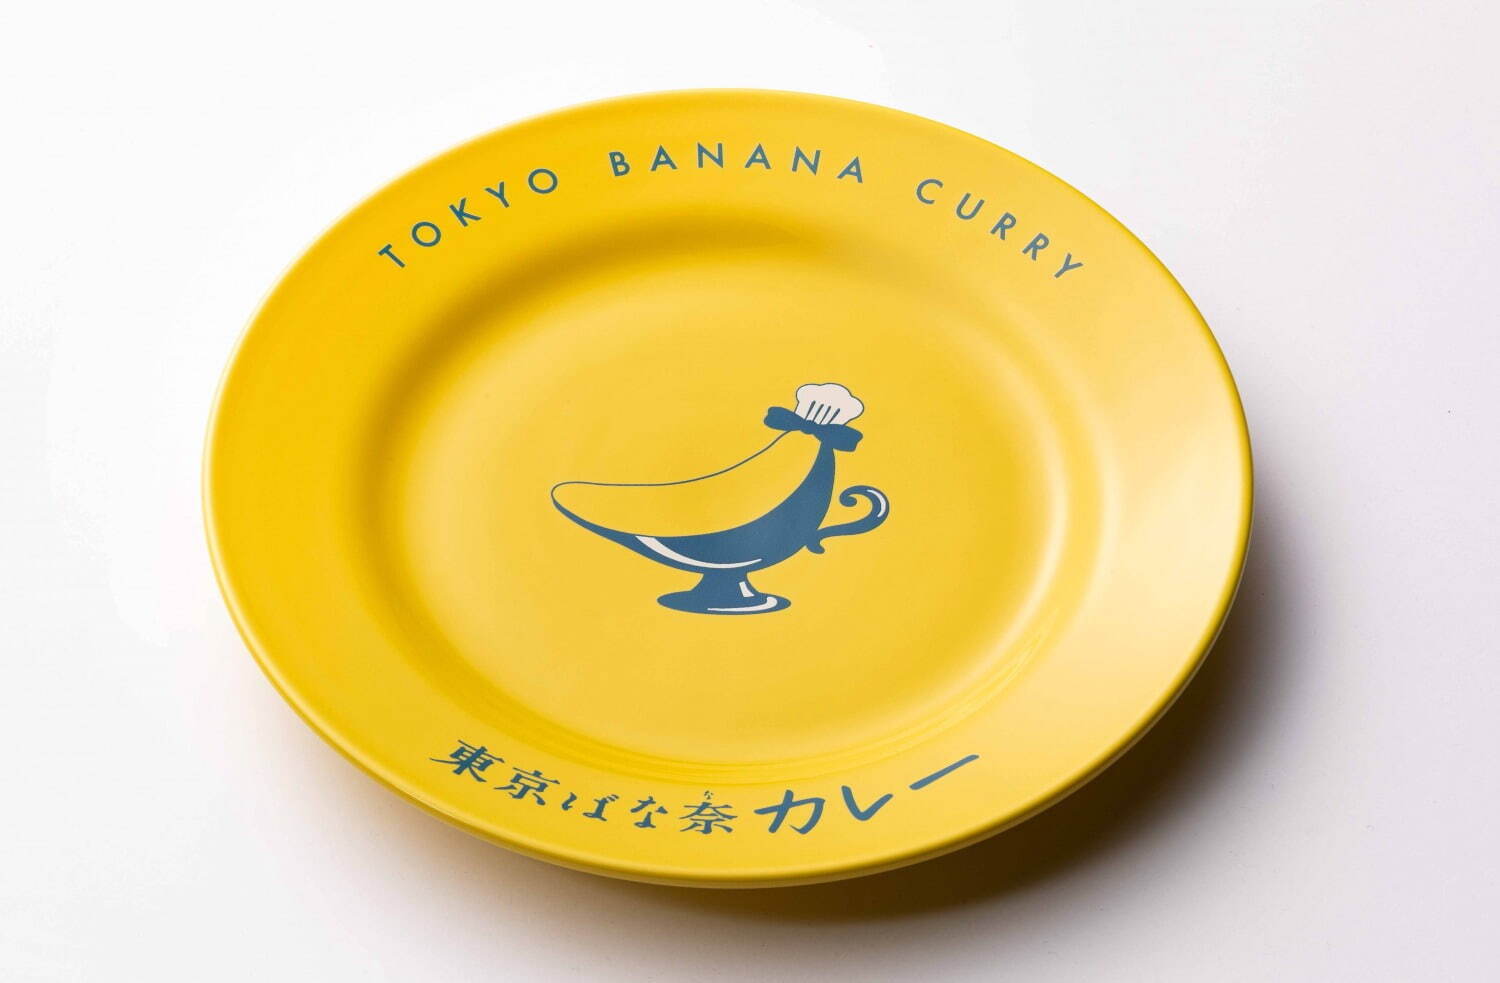 ※「東京ばな奈カレー専用皿」にて提供。皿の持ち帰りは不可。